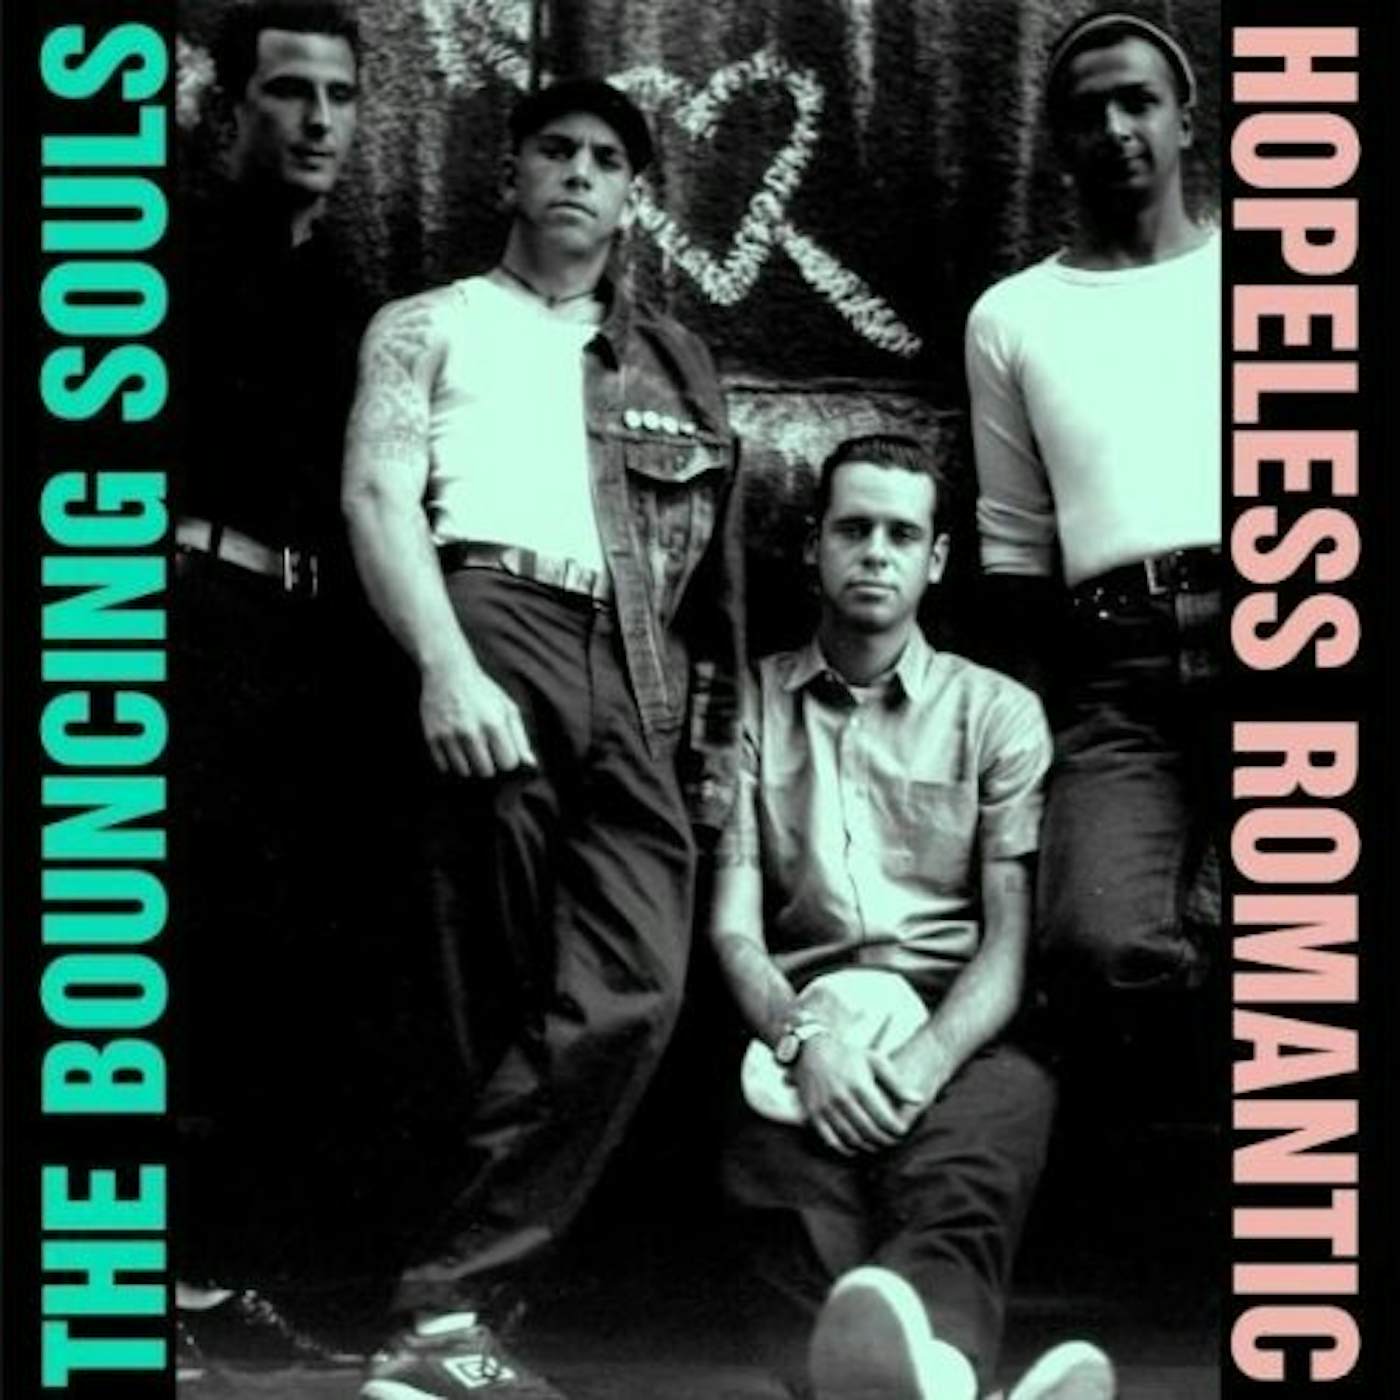 The Bouncing Souls HOPELESS ROMANTIC CD